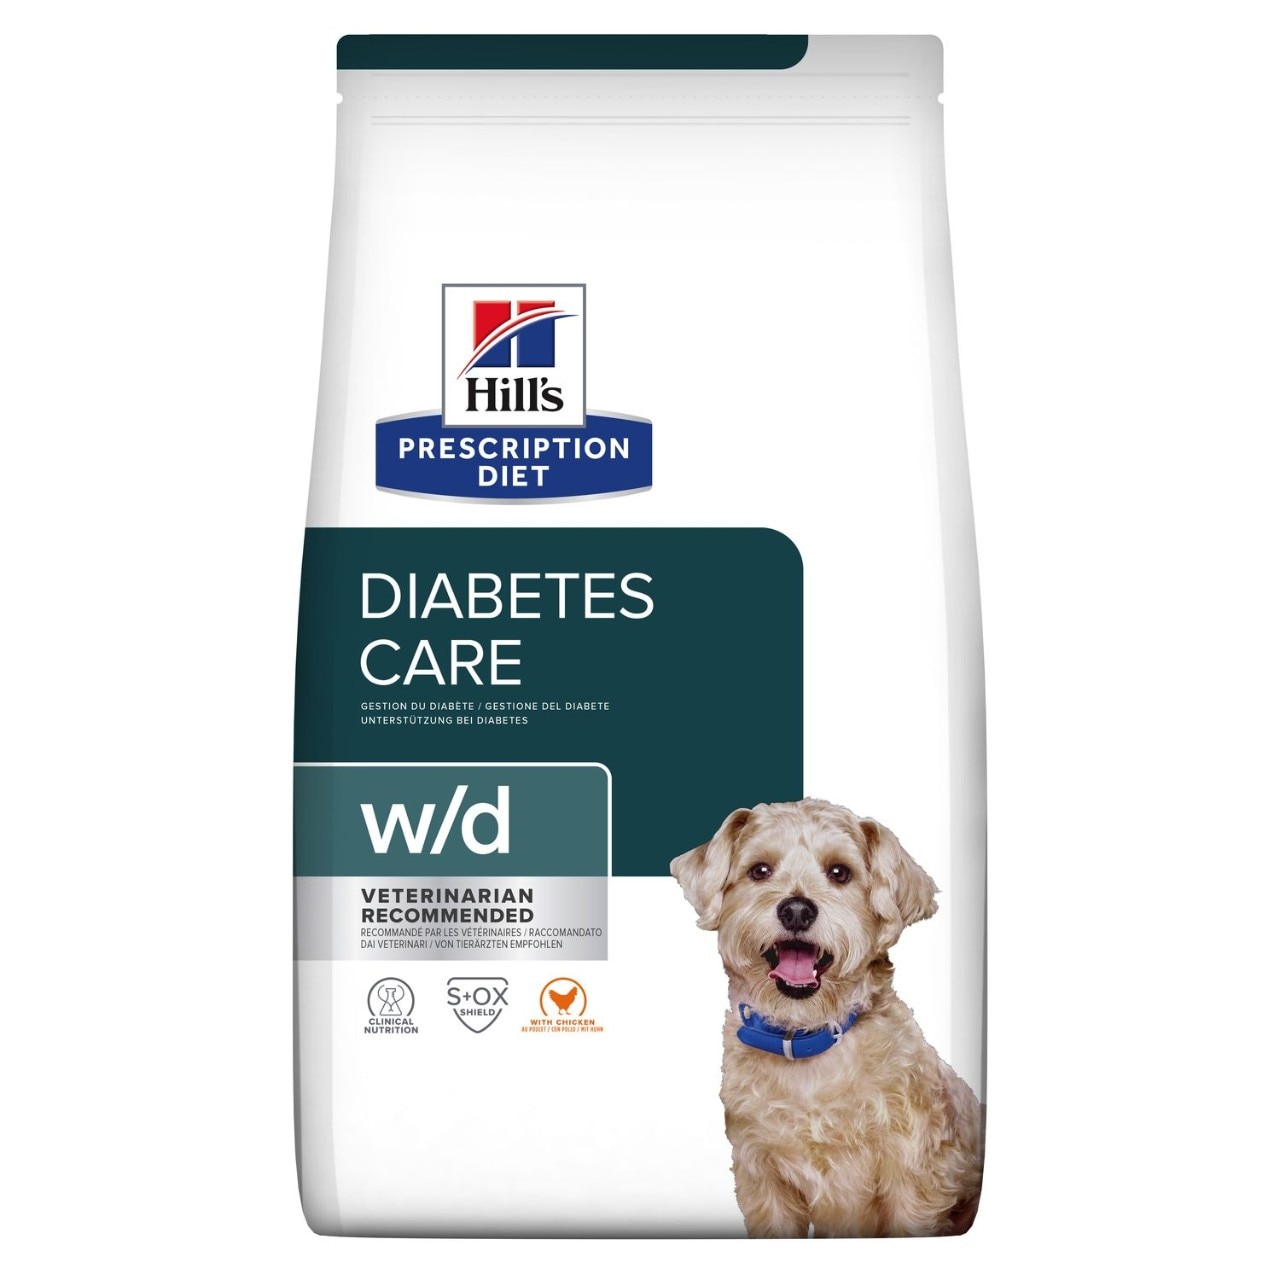 Сухой корм для собак Hill's Prescription Diet Canine W/D with Chicken с курицей, при лечении сахарного диабета, запоров, колитов